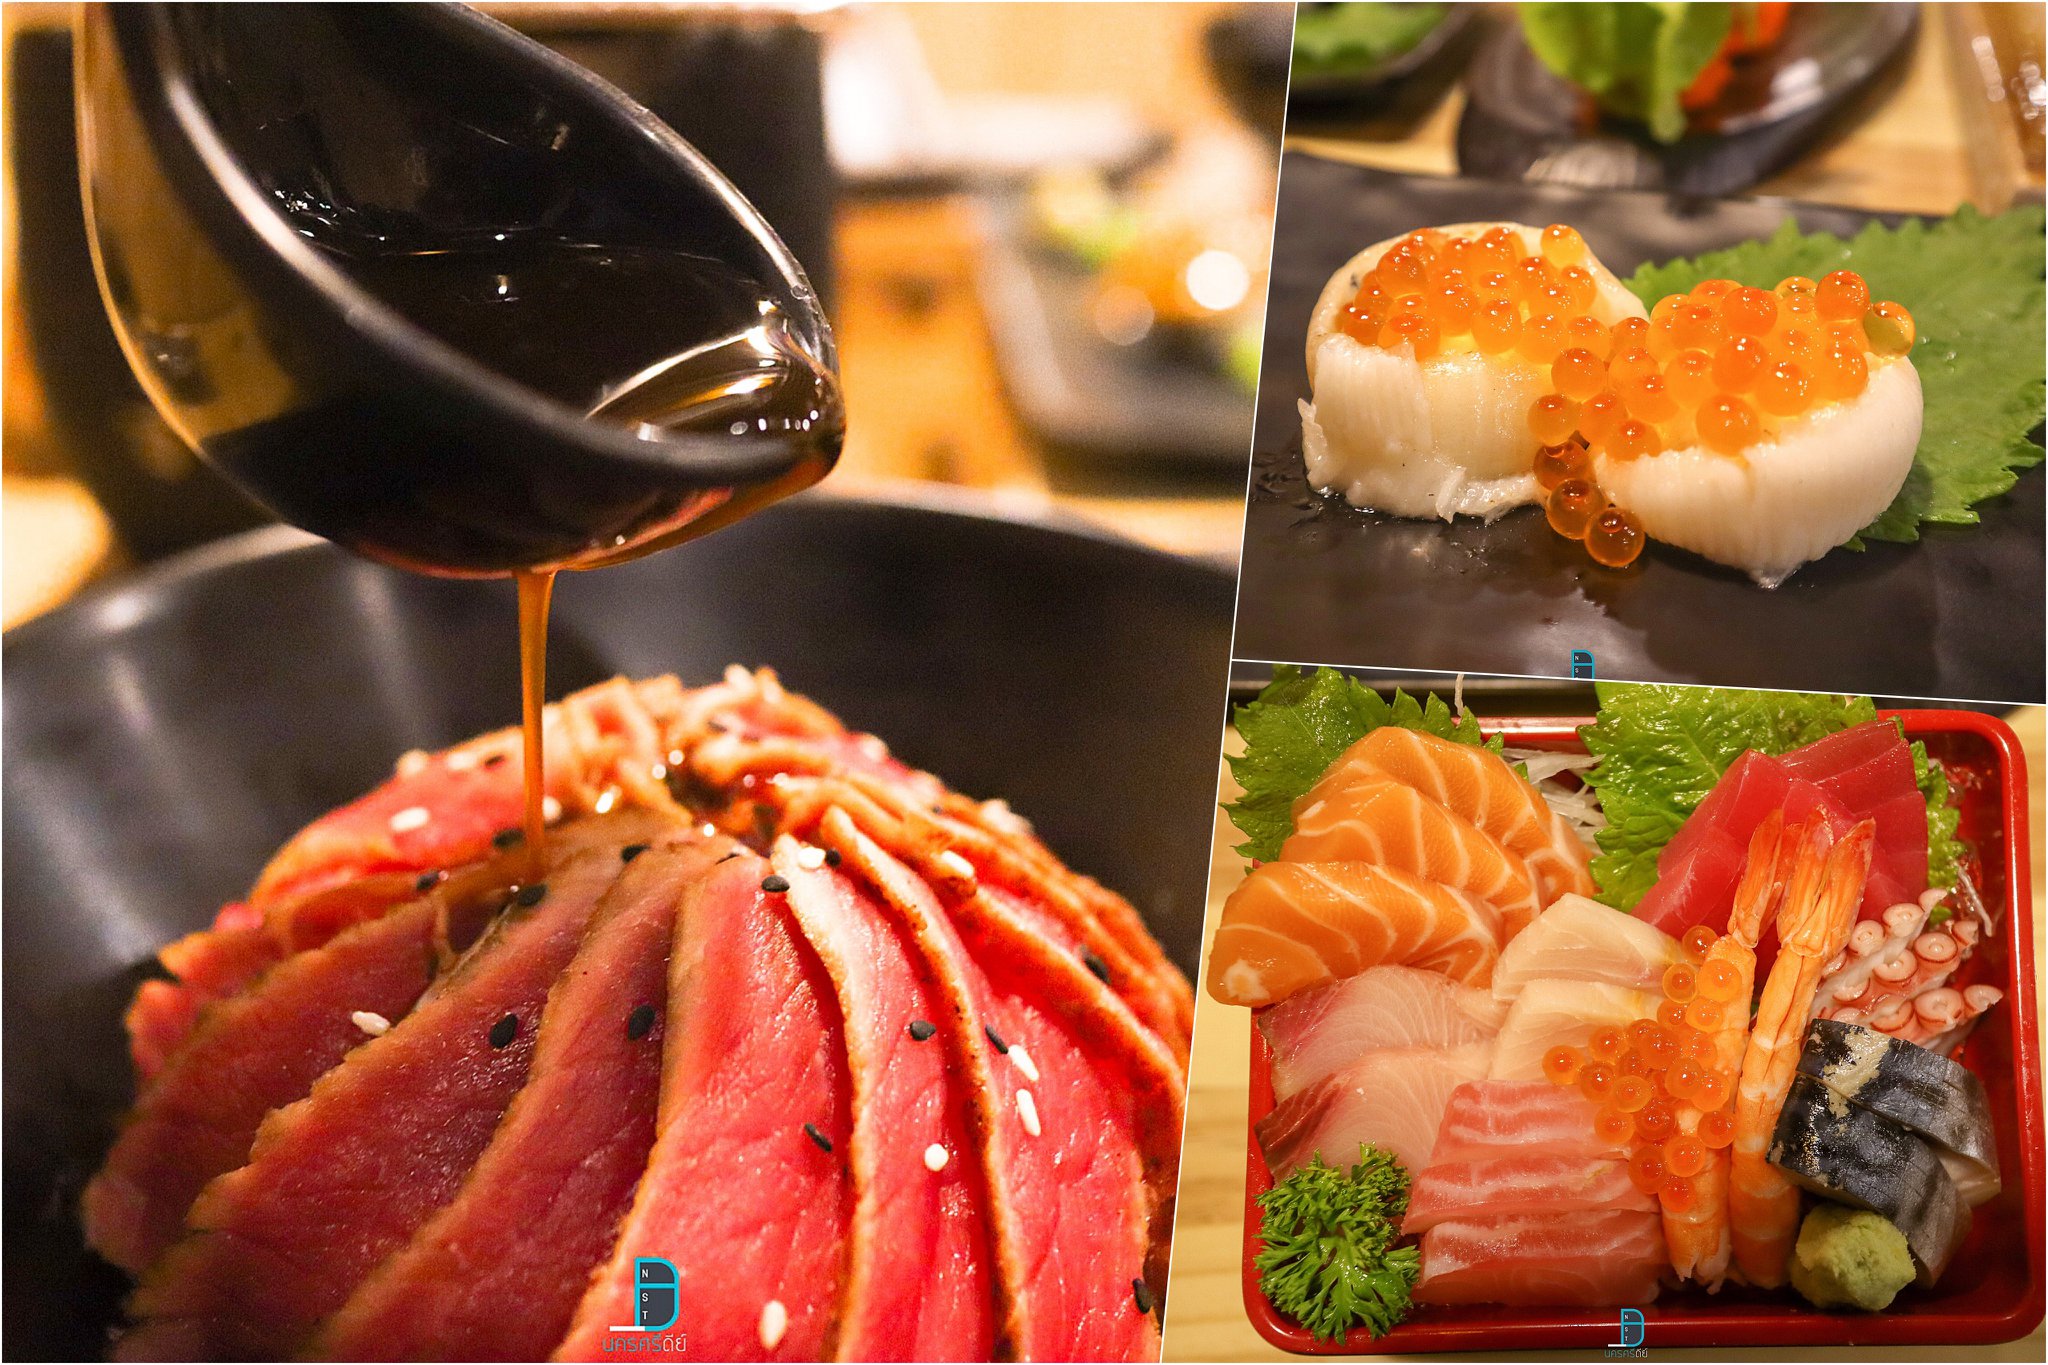  ข้าวหน้าเนื้อย่าง-เอ็นงาวะไข่ปลาแซลมอน-ข้าวหน้าปลาดิบรวม
 ร้านอาหารญี่ปุ่น,นครศรีธรรมราช,ของกิน,ร้านอร่อย,อำเภอเมือง,กินอะไรดี,ของหรอย,อาหารญี่ปุ่น